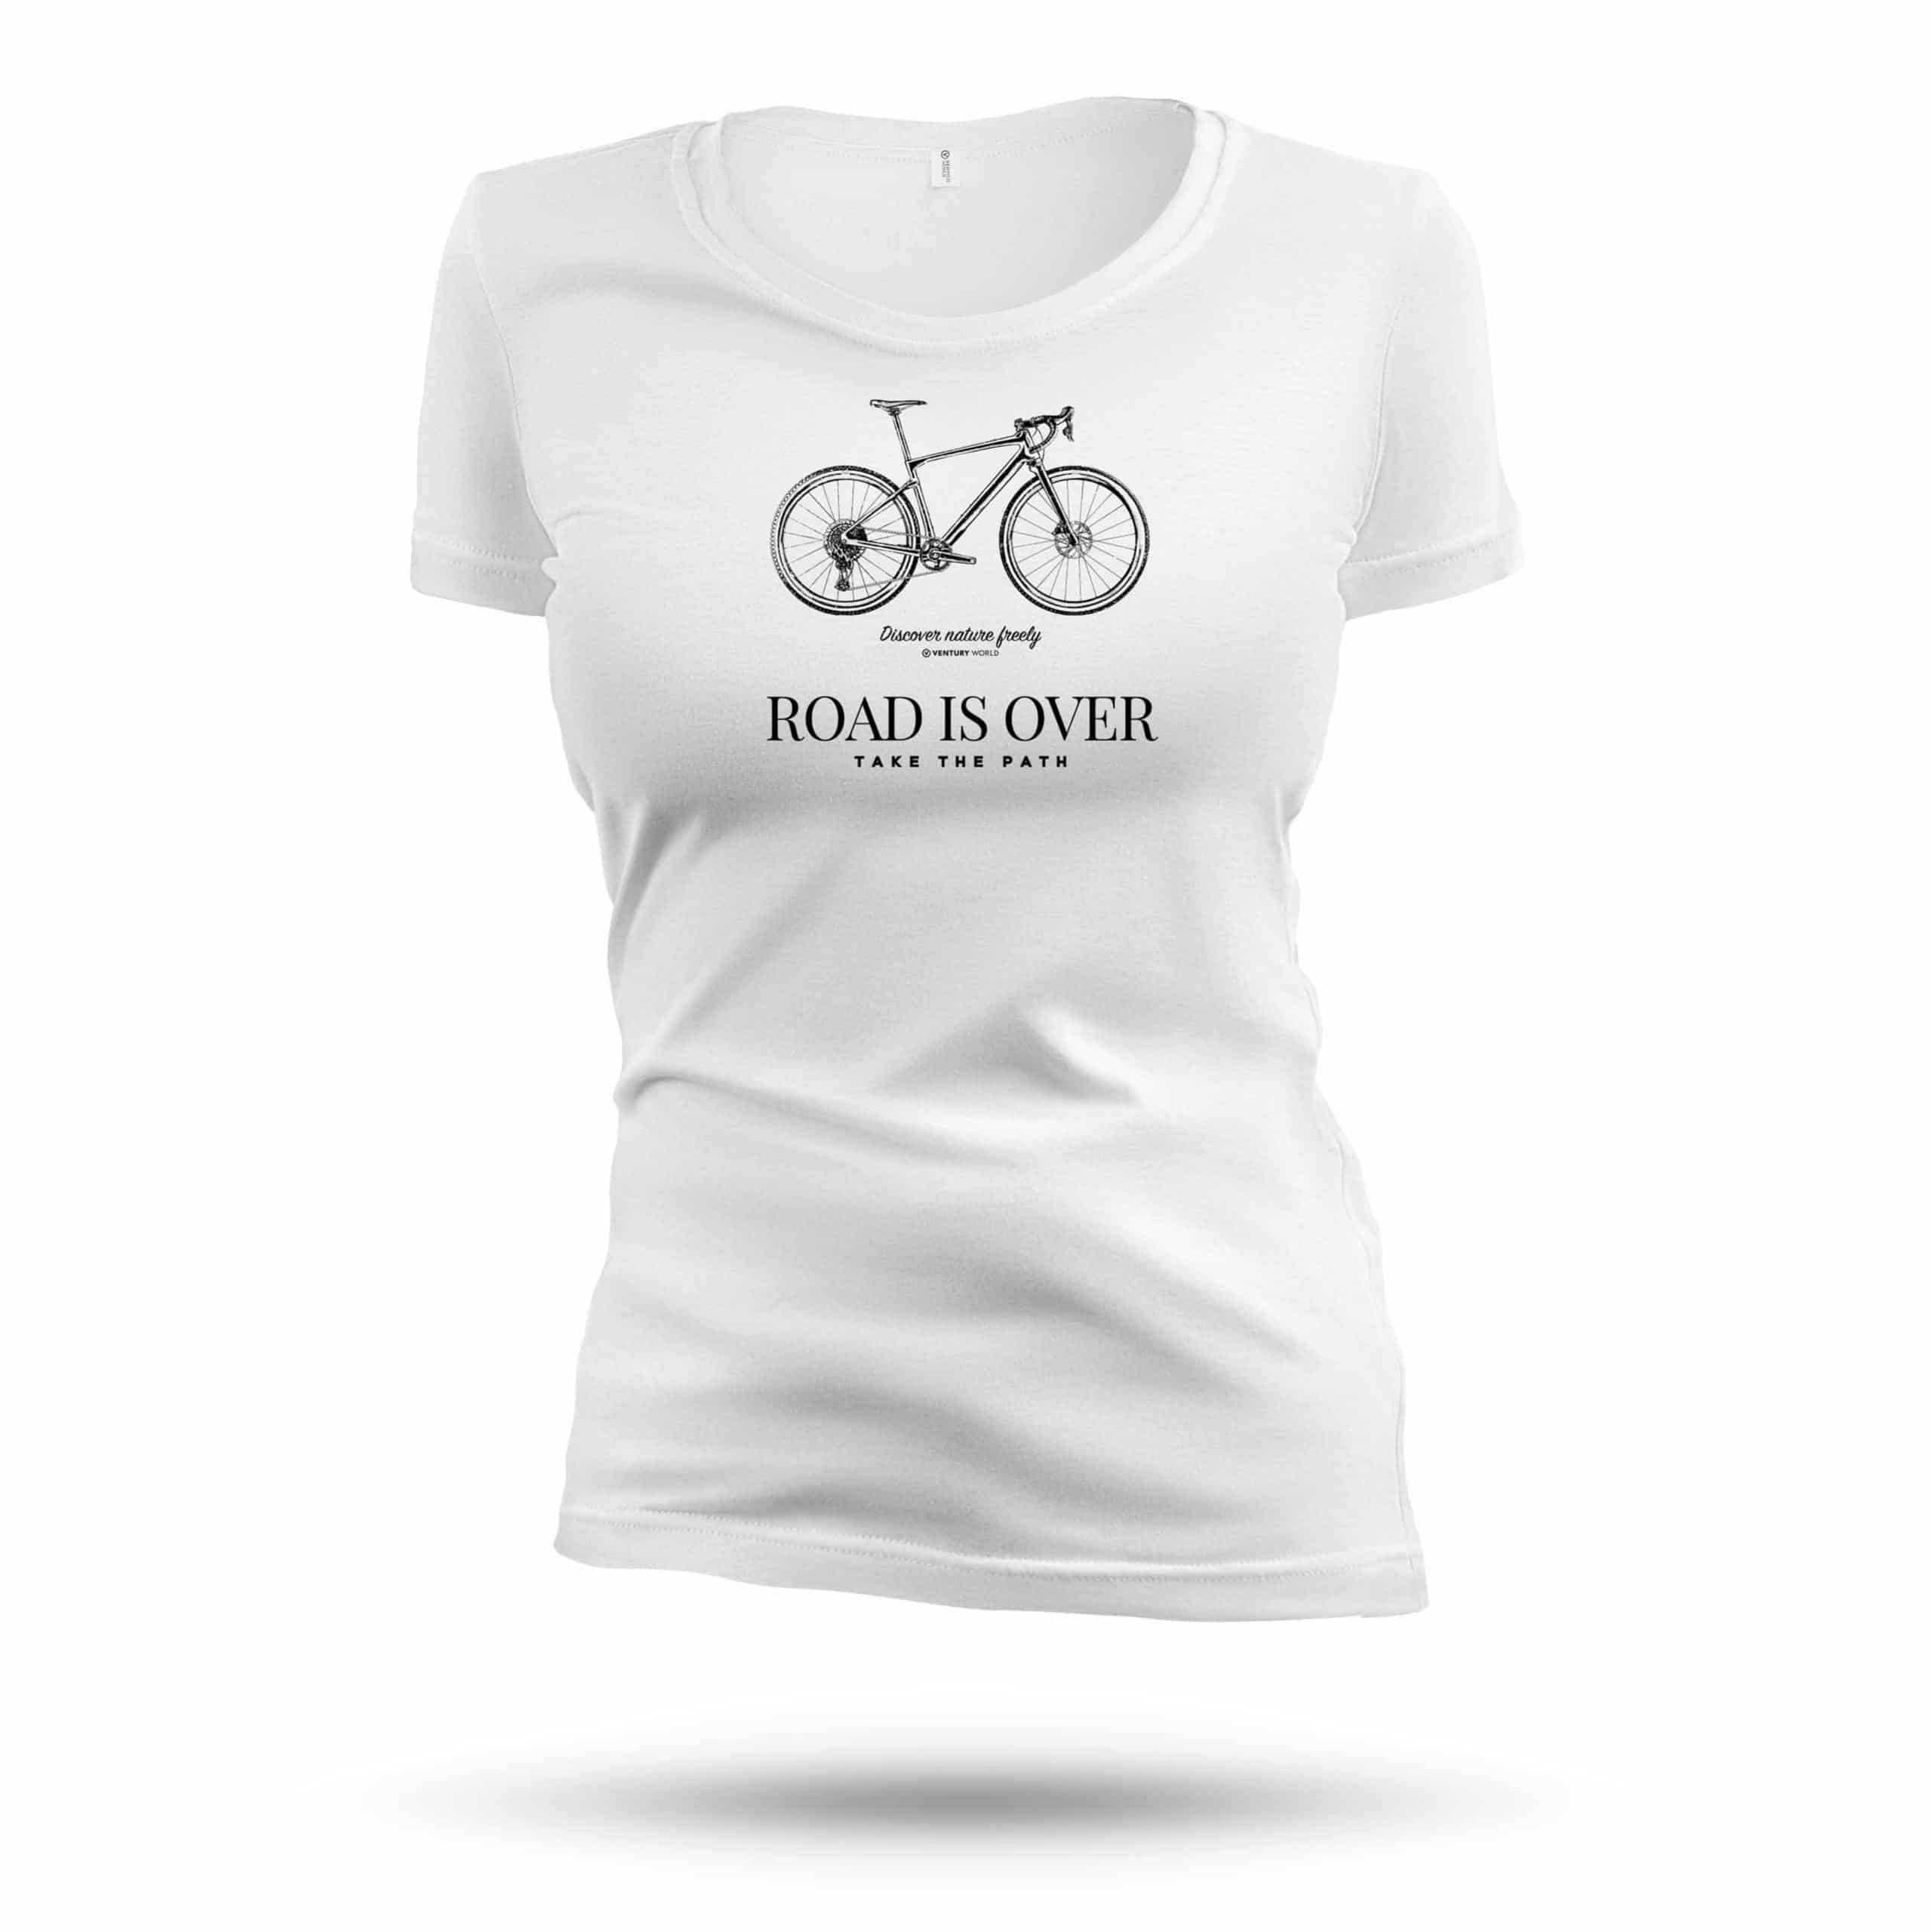 T-shirt cycling femme - Gravel Bike - Ride on all paths freely - T-shirt femme 100 % naturel pour femme de grande qualité - taille ajustée grand col rond.